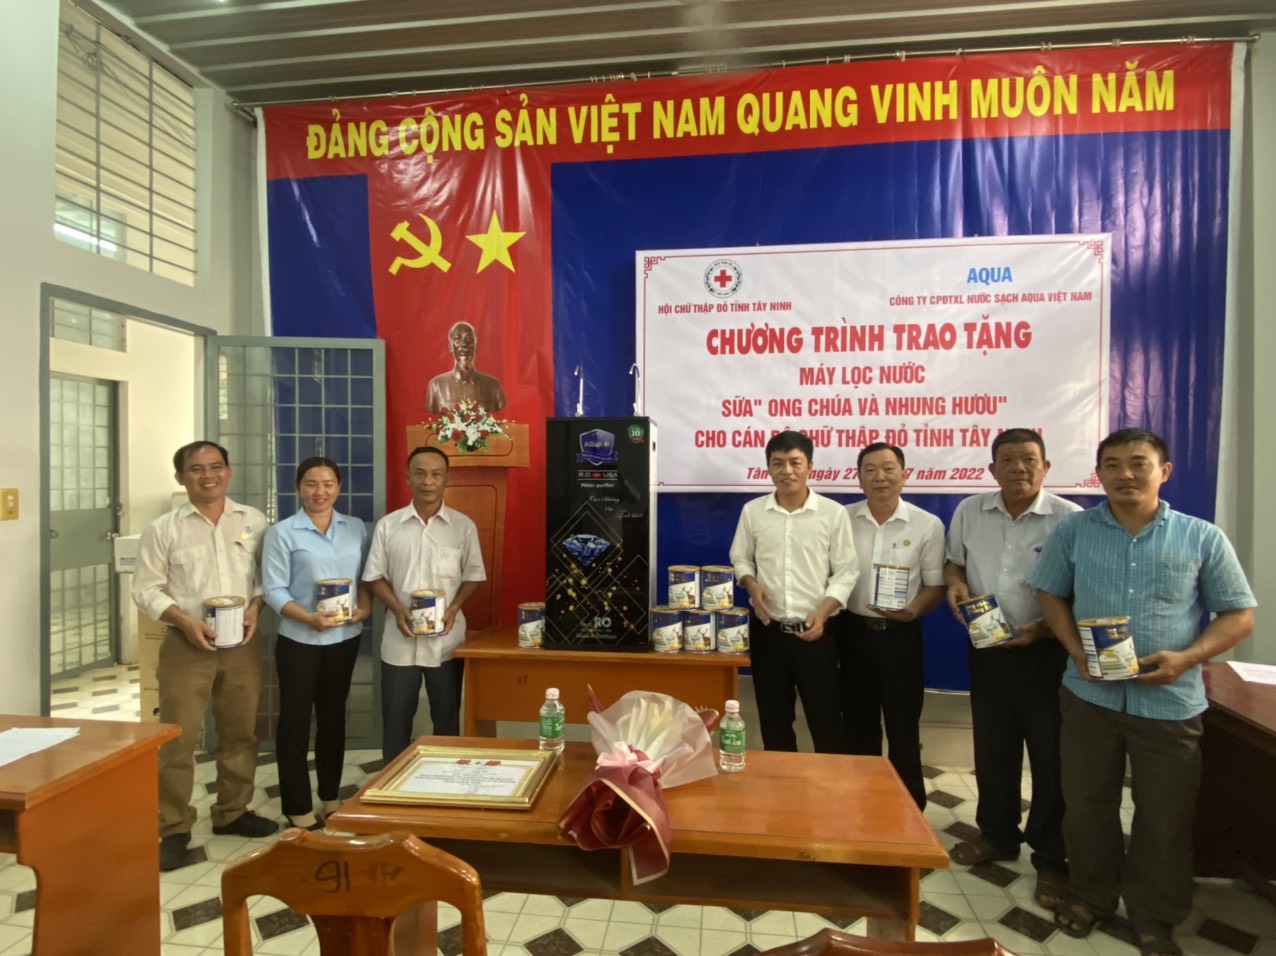 Công ty Cổ phần Đầu tư xử lý nước sạch Aqua Việt NamTặng máy lọc nước và quà cho Hội viên Chữ thập Đỏ trong huyện